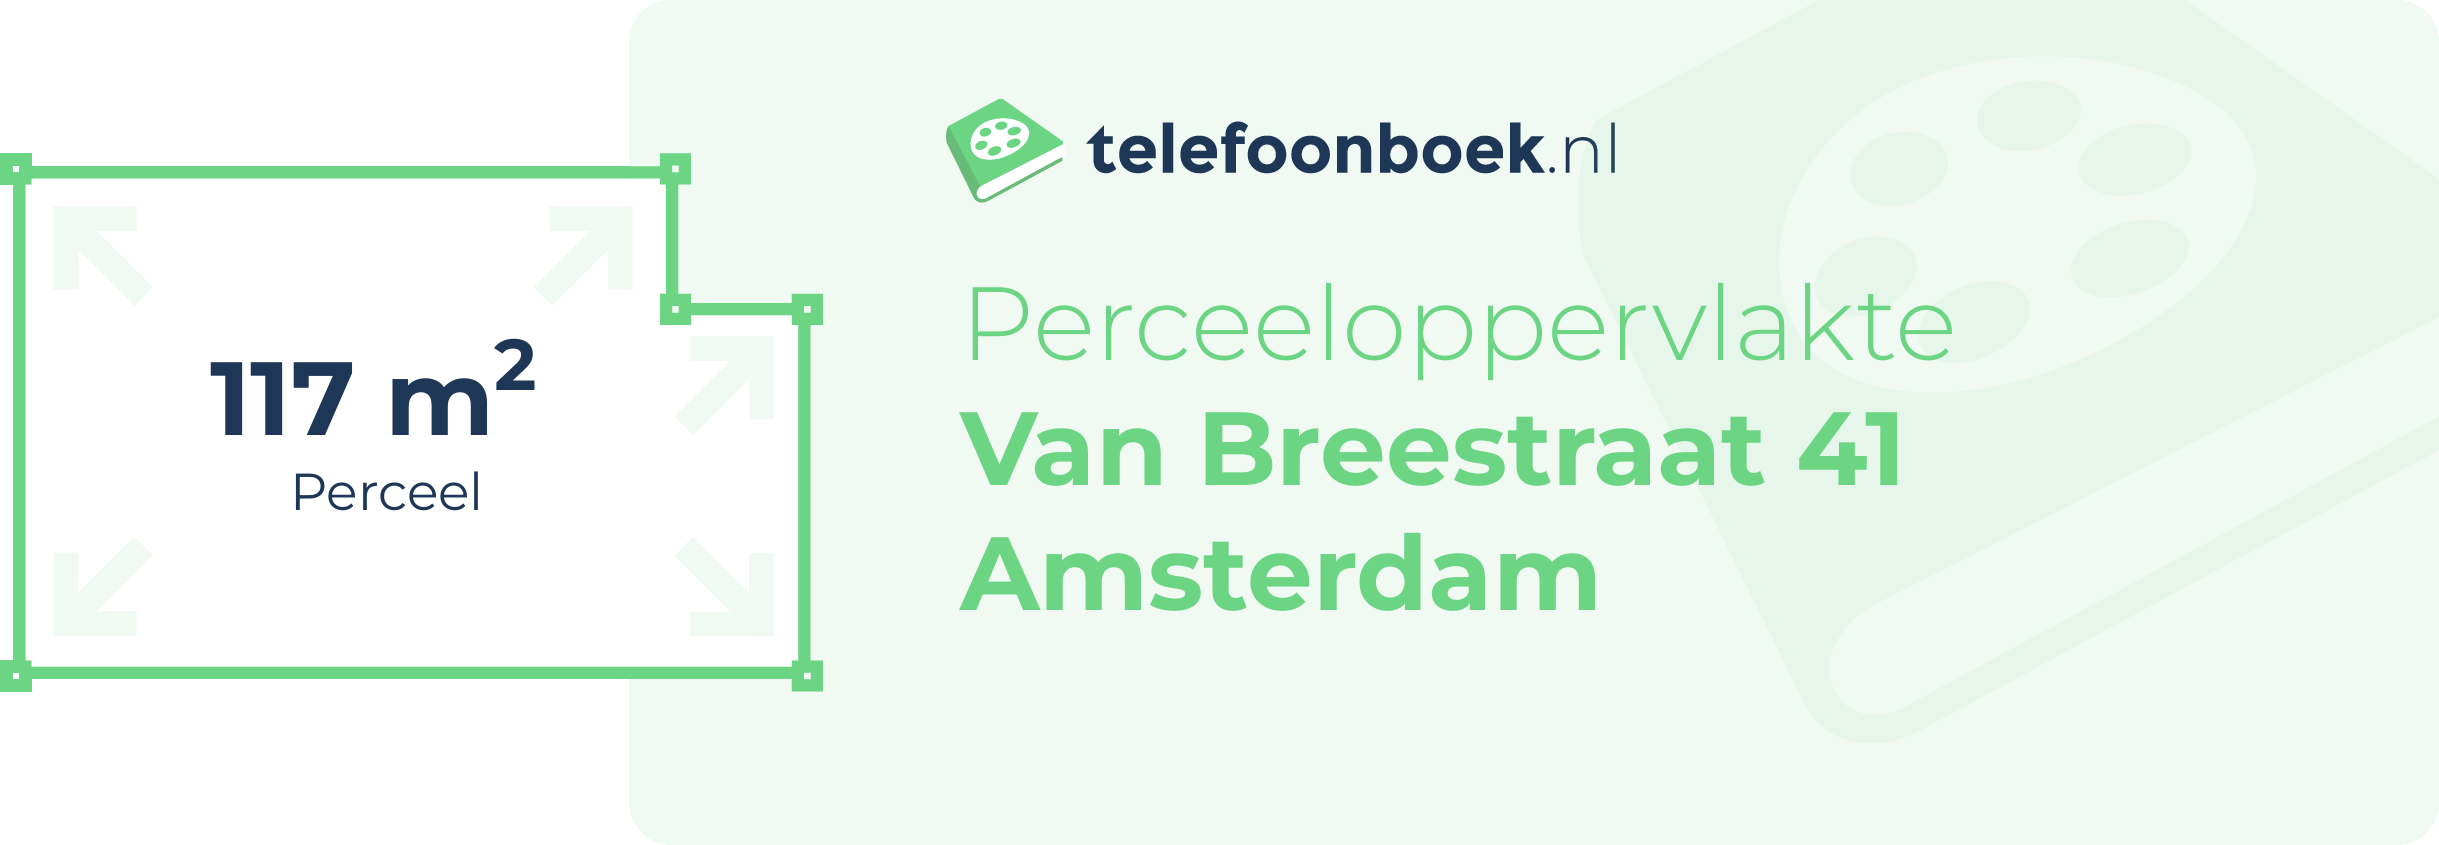 Perceeloppervlakte Van Breestraat 41 Amsterdam